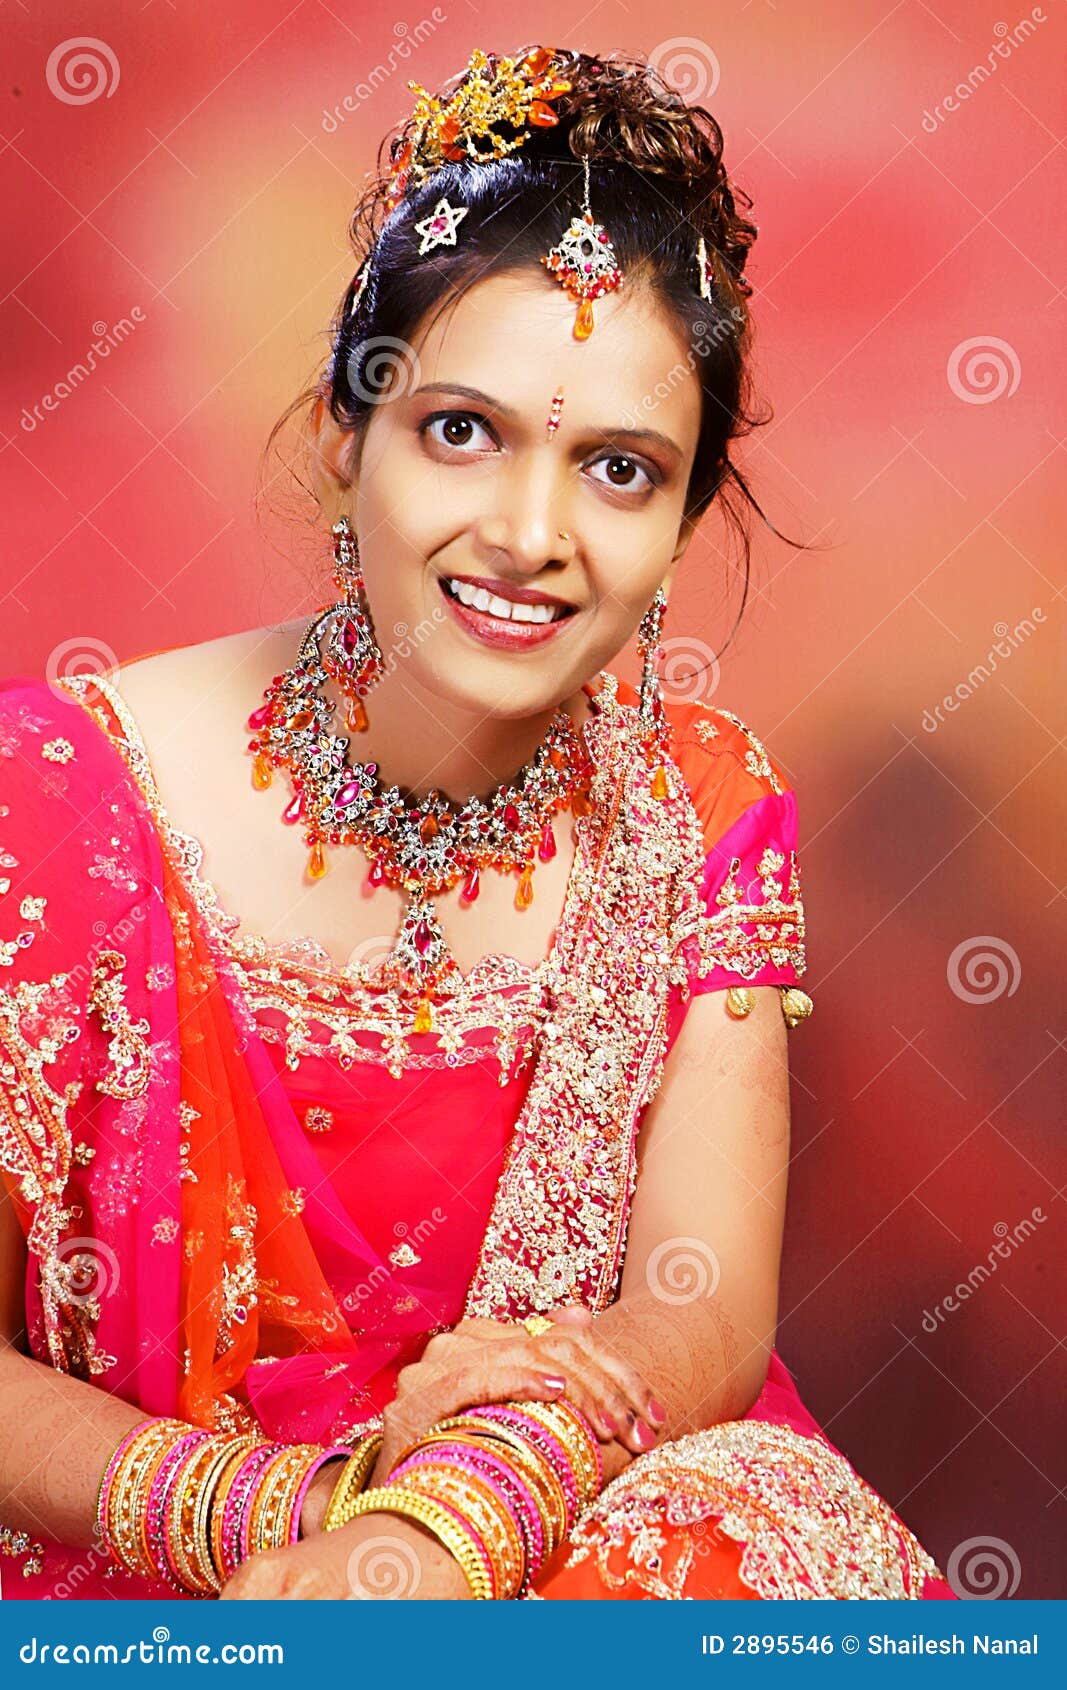 keralaweddingphotography#kalyanaramensphotography#indianphotographers#weddingsutra…  | Bridal photoshoot, Indian wedding couple photography, Indian bride poses